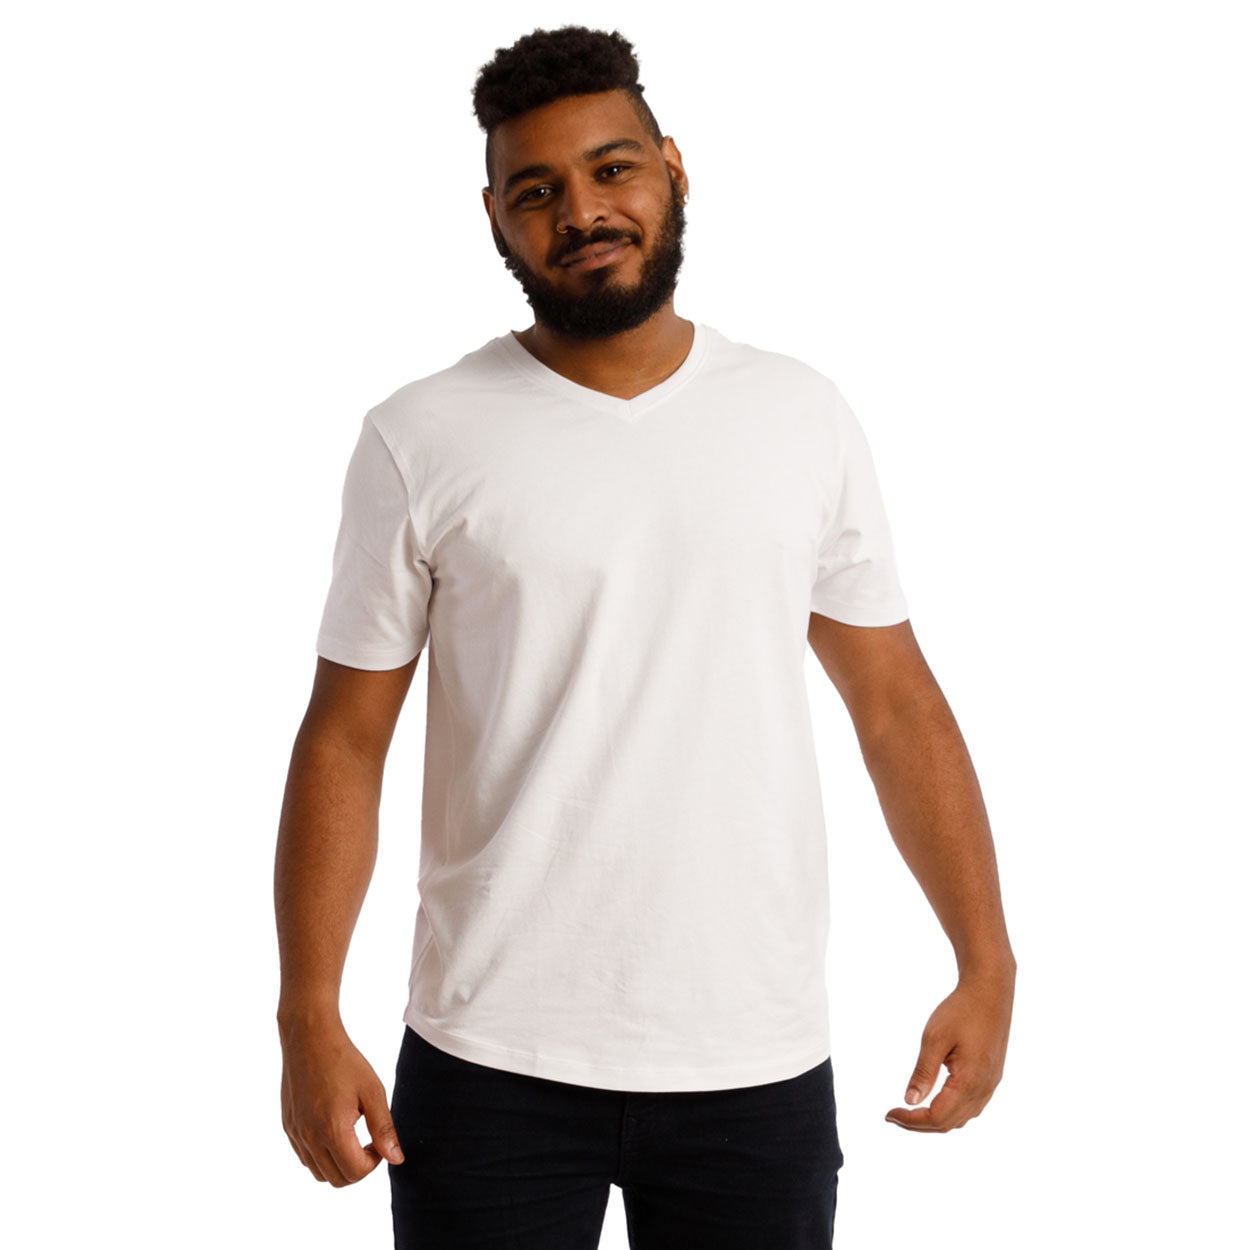 Organic V-Neck T-Shirt 3 Pack / The "Basic" Basic